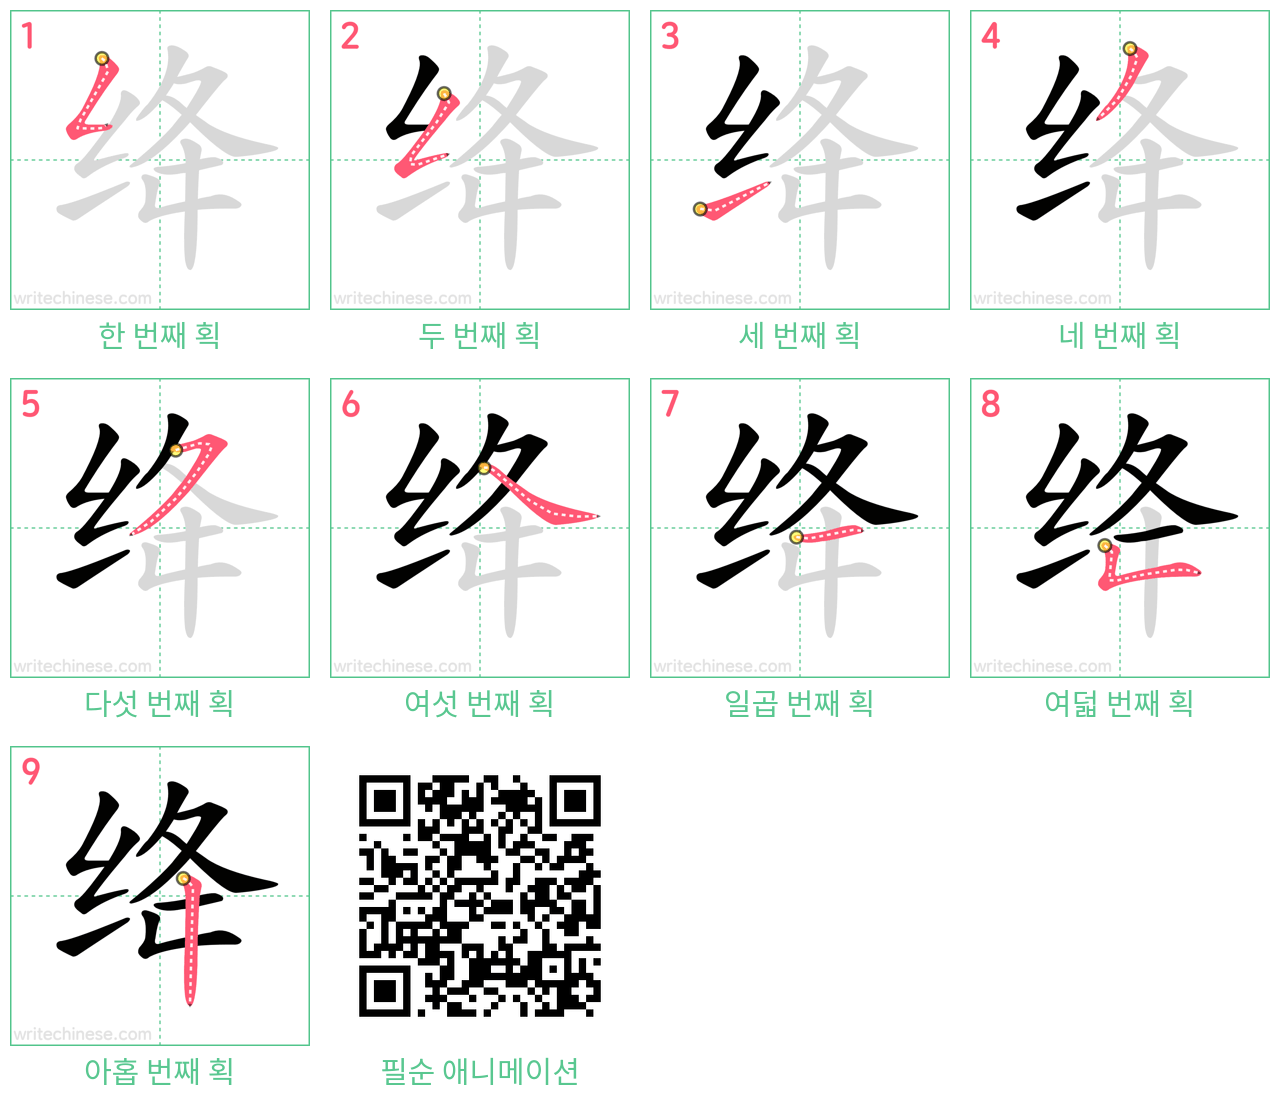 绛 step-by-step stroke order diagrams